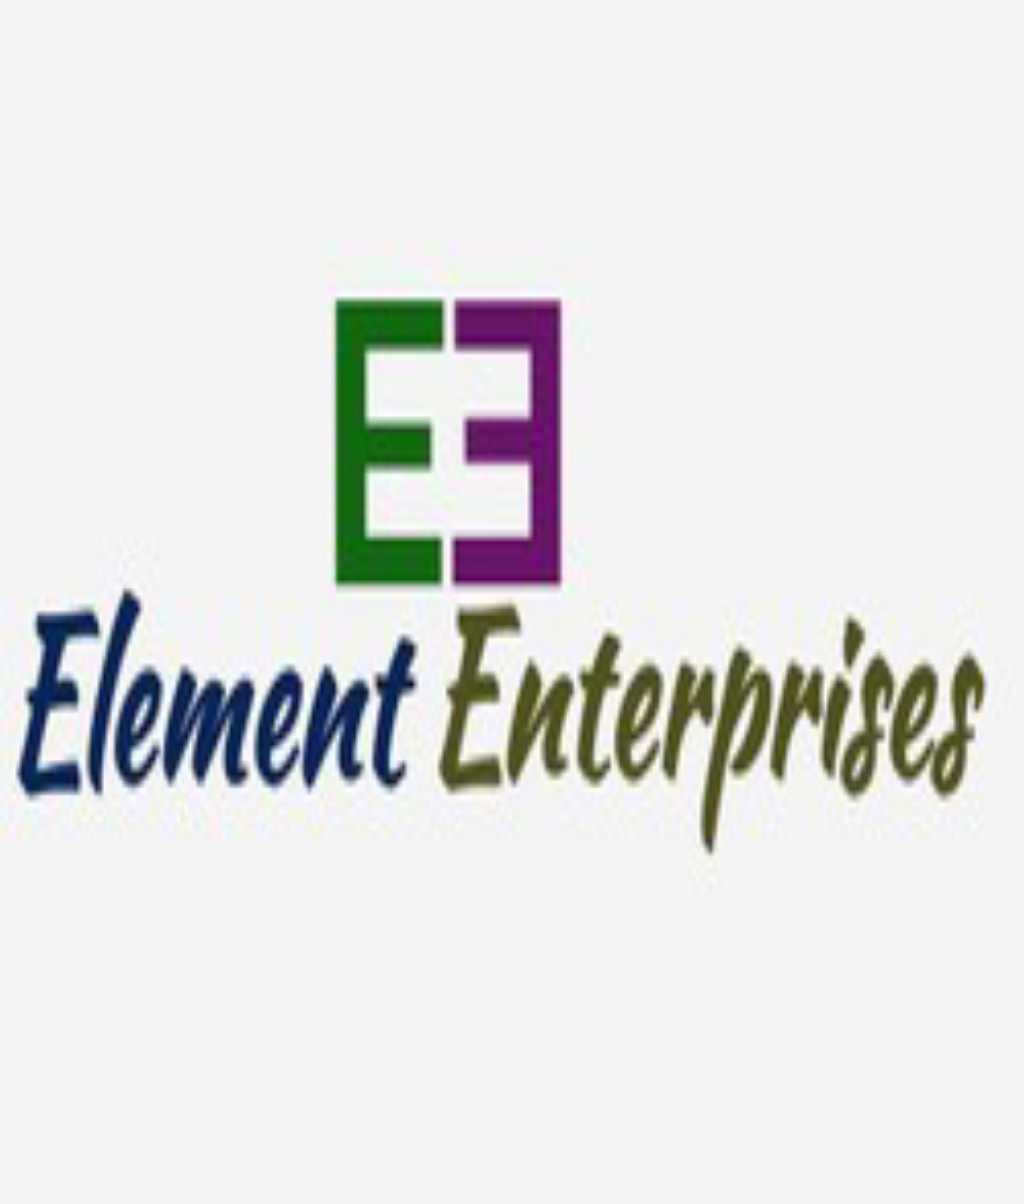 Element Enterprises